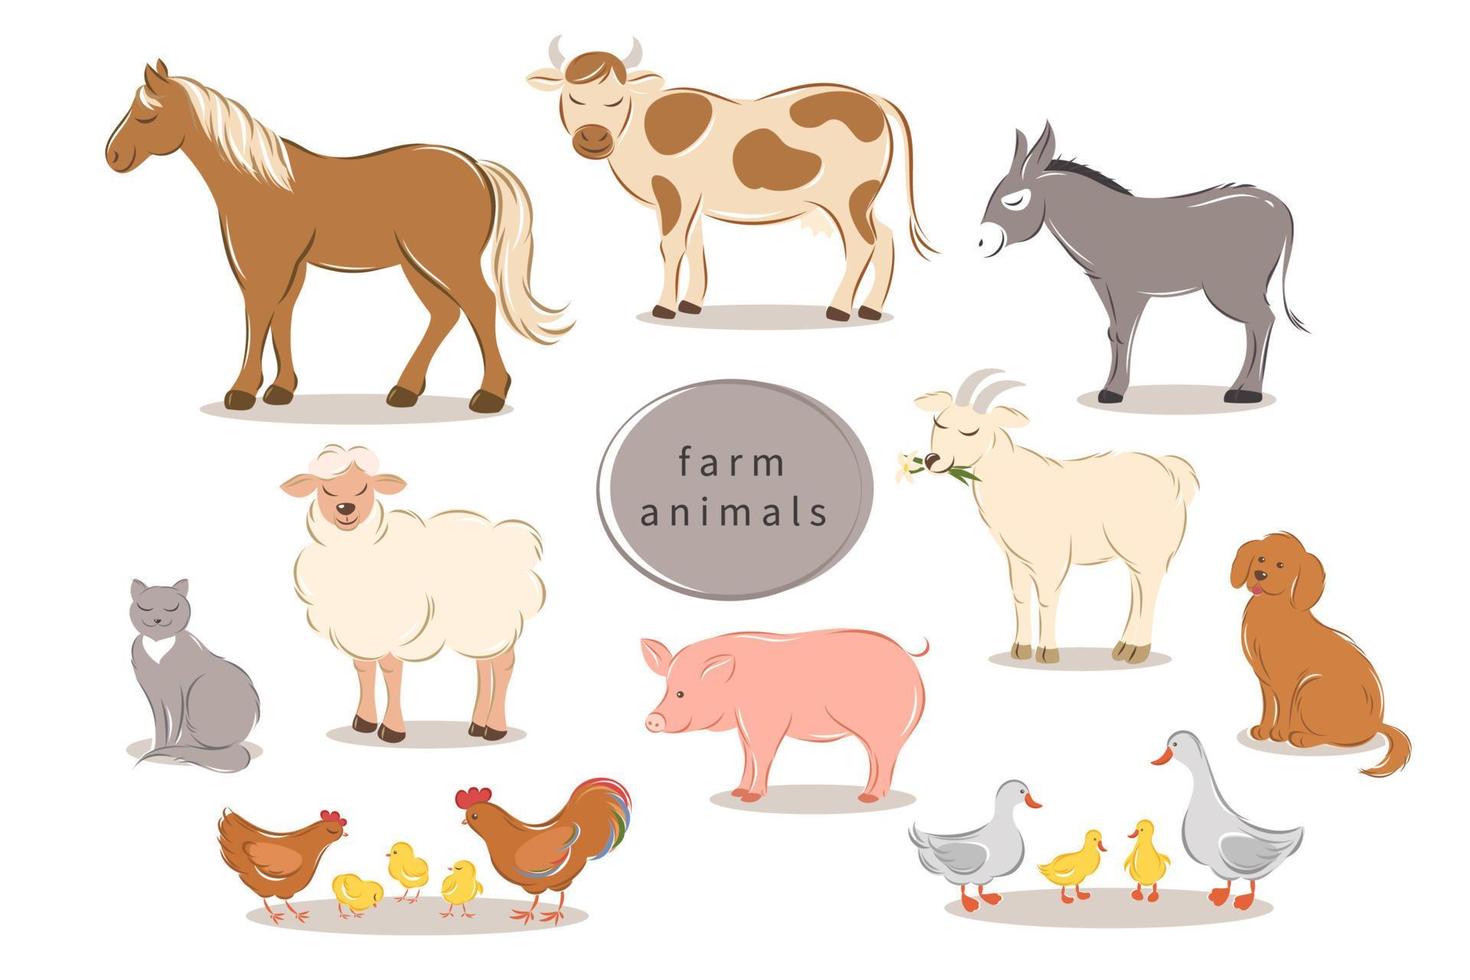 Nutztiere auf weißem Hintergrund. karikaturtiersammlung pferd, kuh, esel, schaf, ziege, schwein, katze, hund, ente, gans, huhn, hahn. Vektor-Illustration. vektor